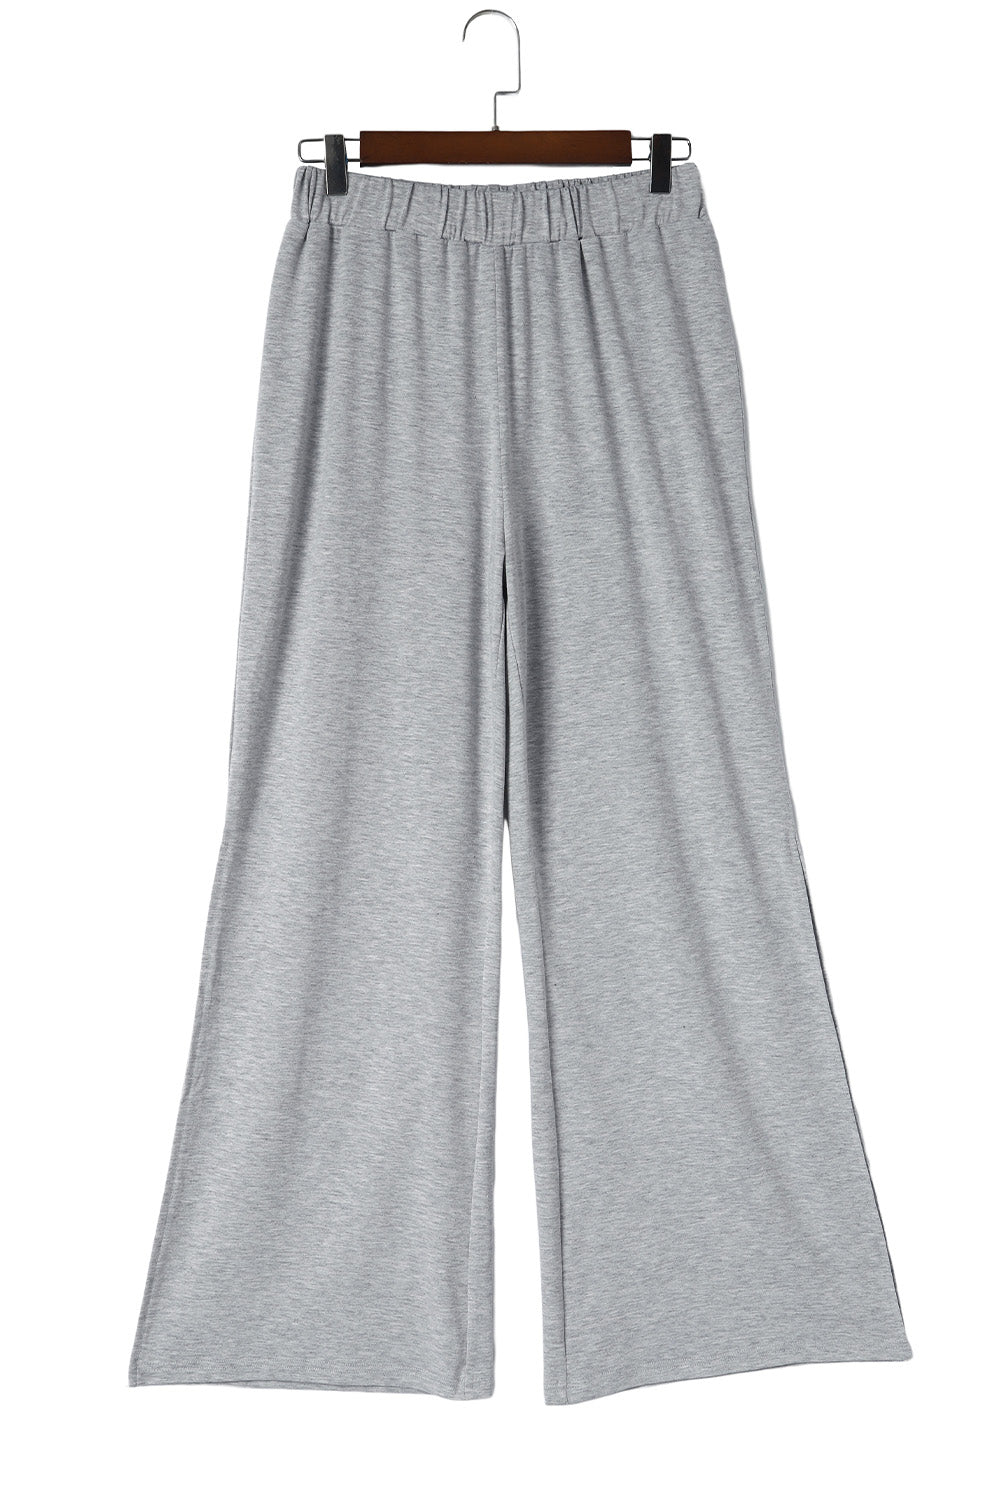 Pantalon taille haute gris à fentes latérales et jambes larges